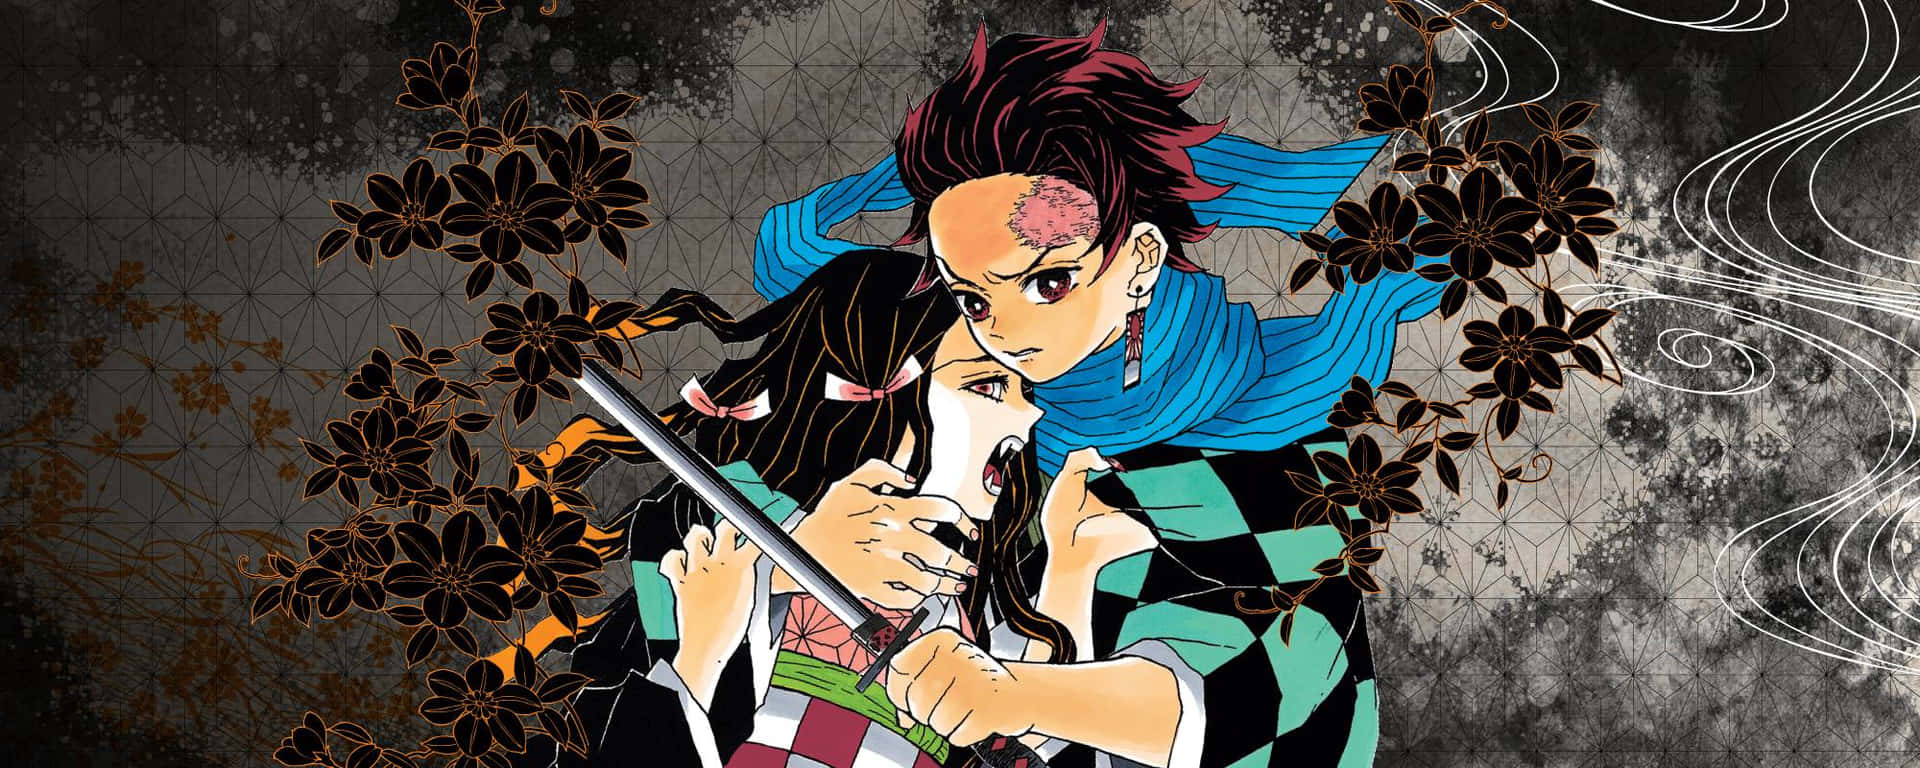 Schließedich Tanjiro Und Seinen Freunden Auf Ihrer Mission An, Nezuko Im Demon Slayer Manga Zu Retten. Wallpaper